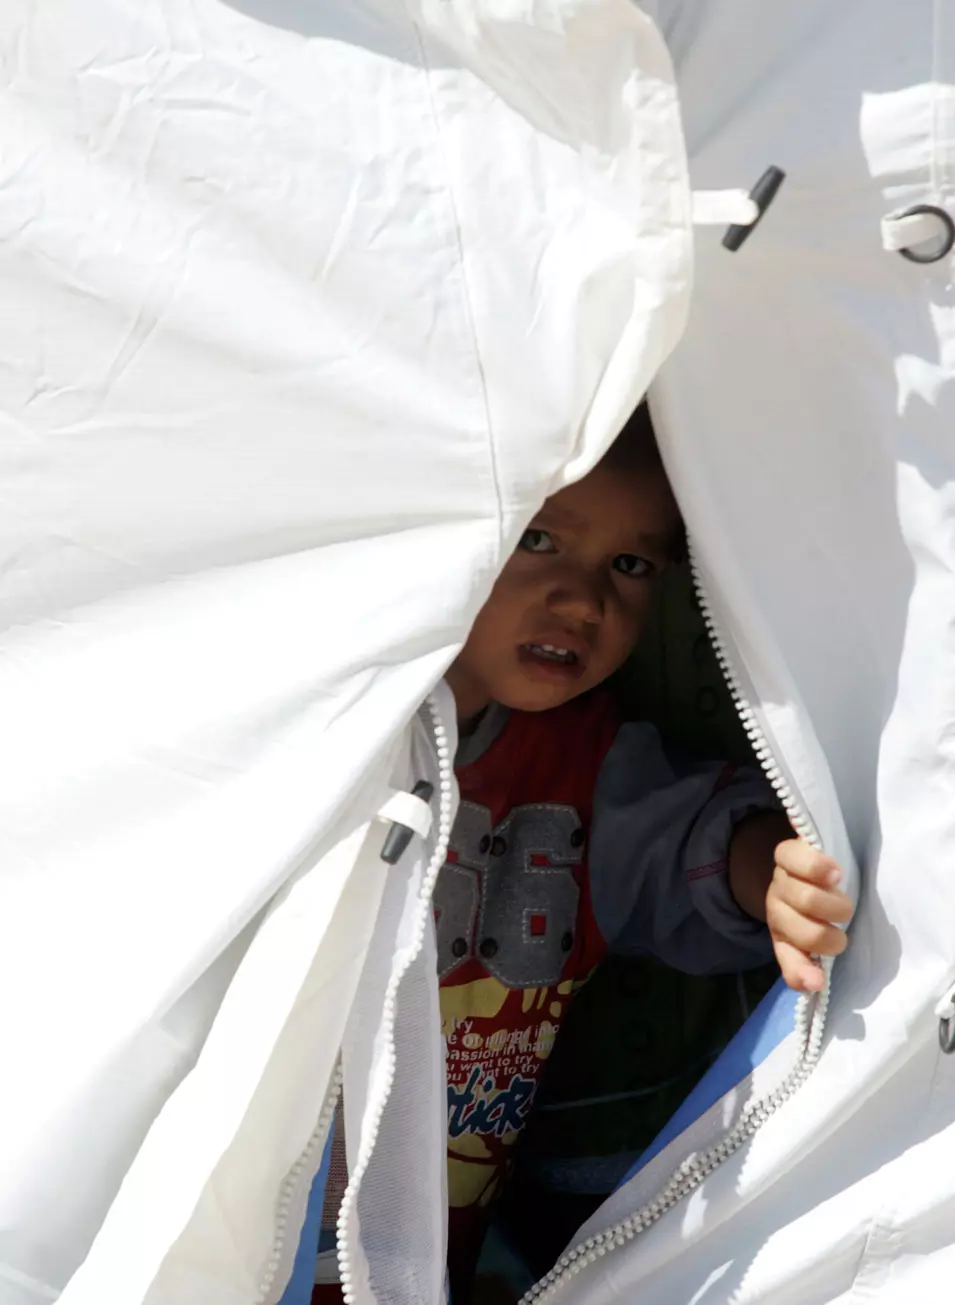 להכיר בשונה, להכיר גם בדומה. ילד סורי במחנה פליטים בטורקיה, בשנה שעברה